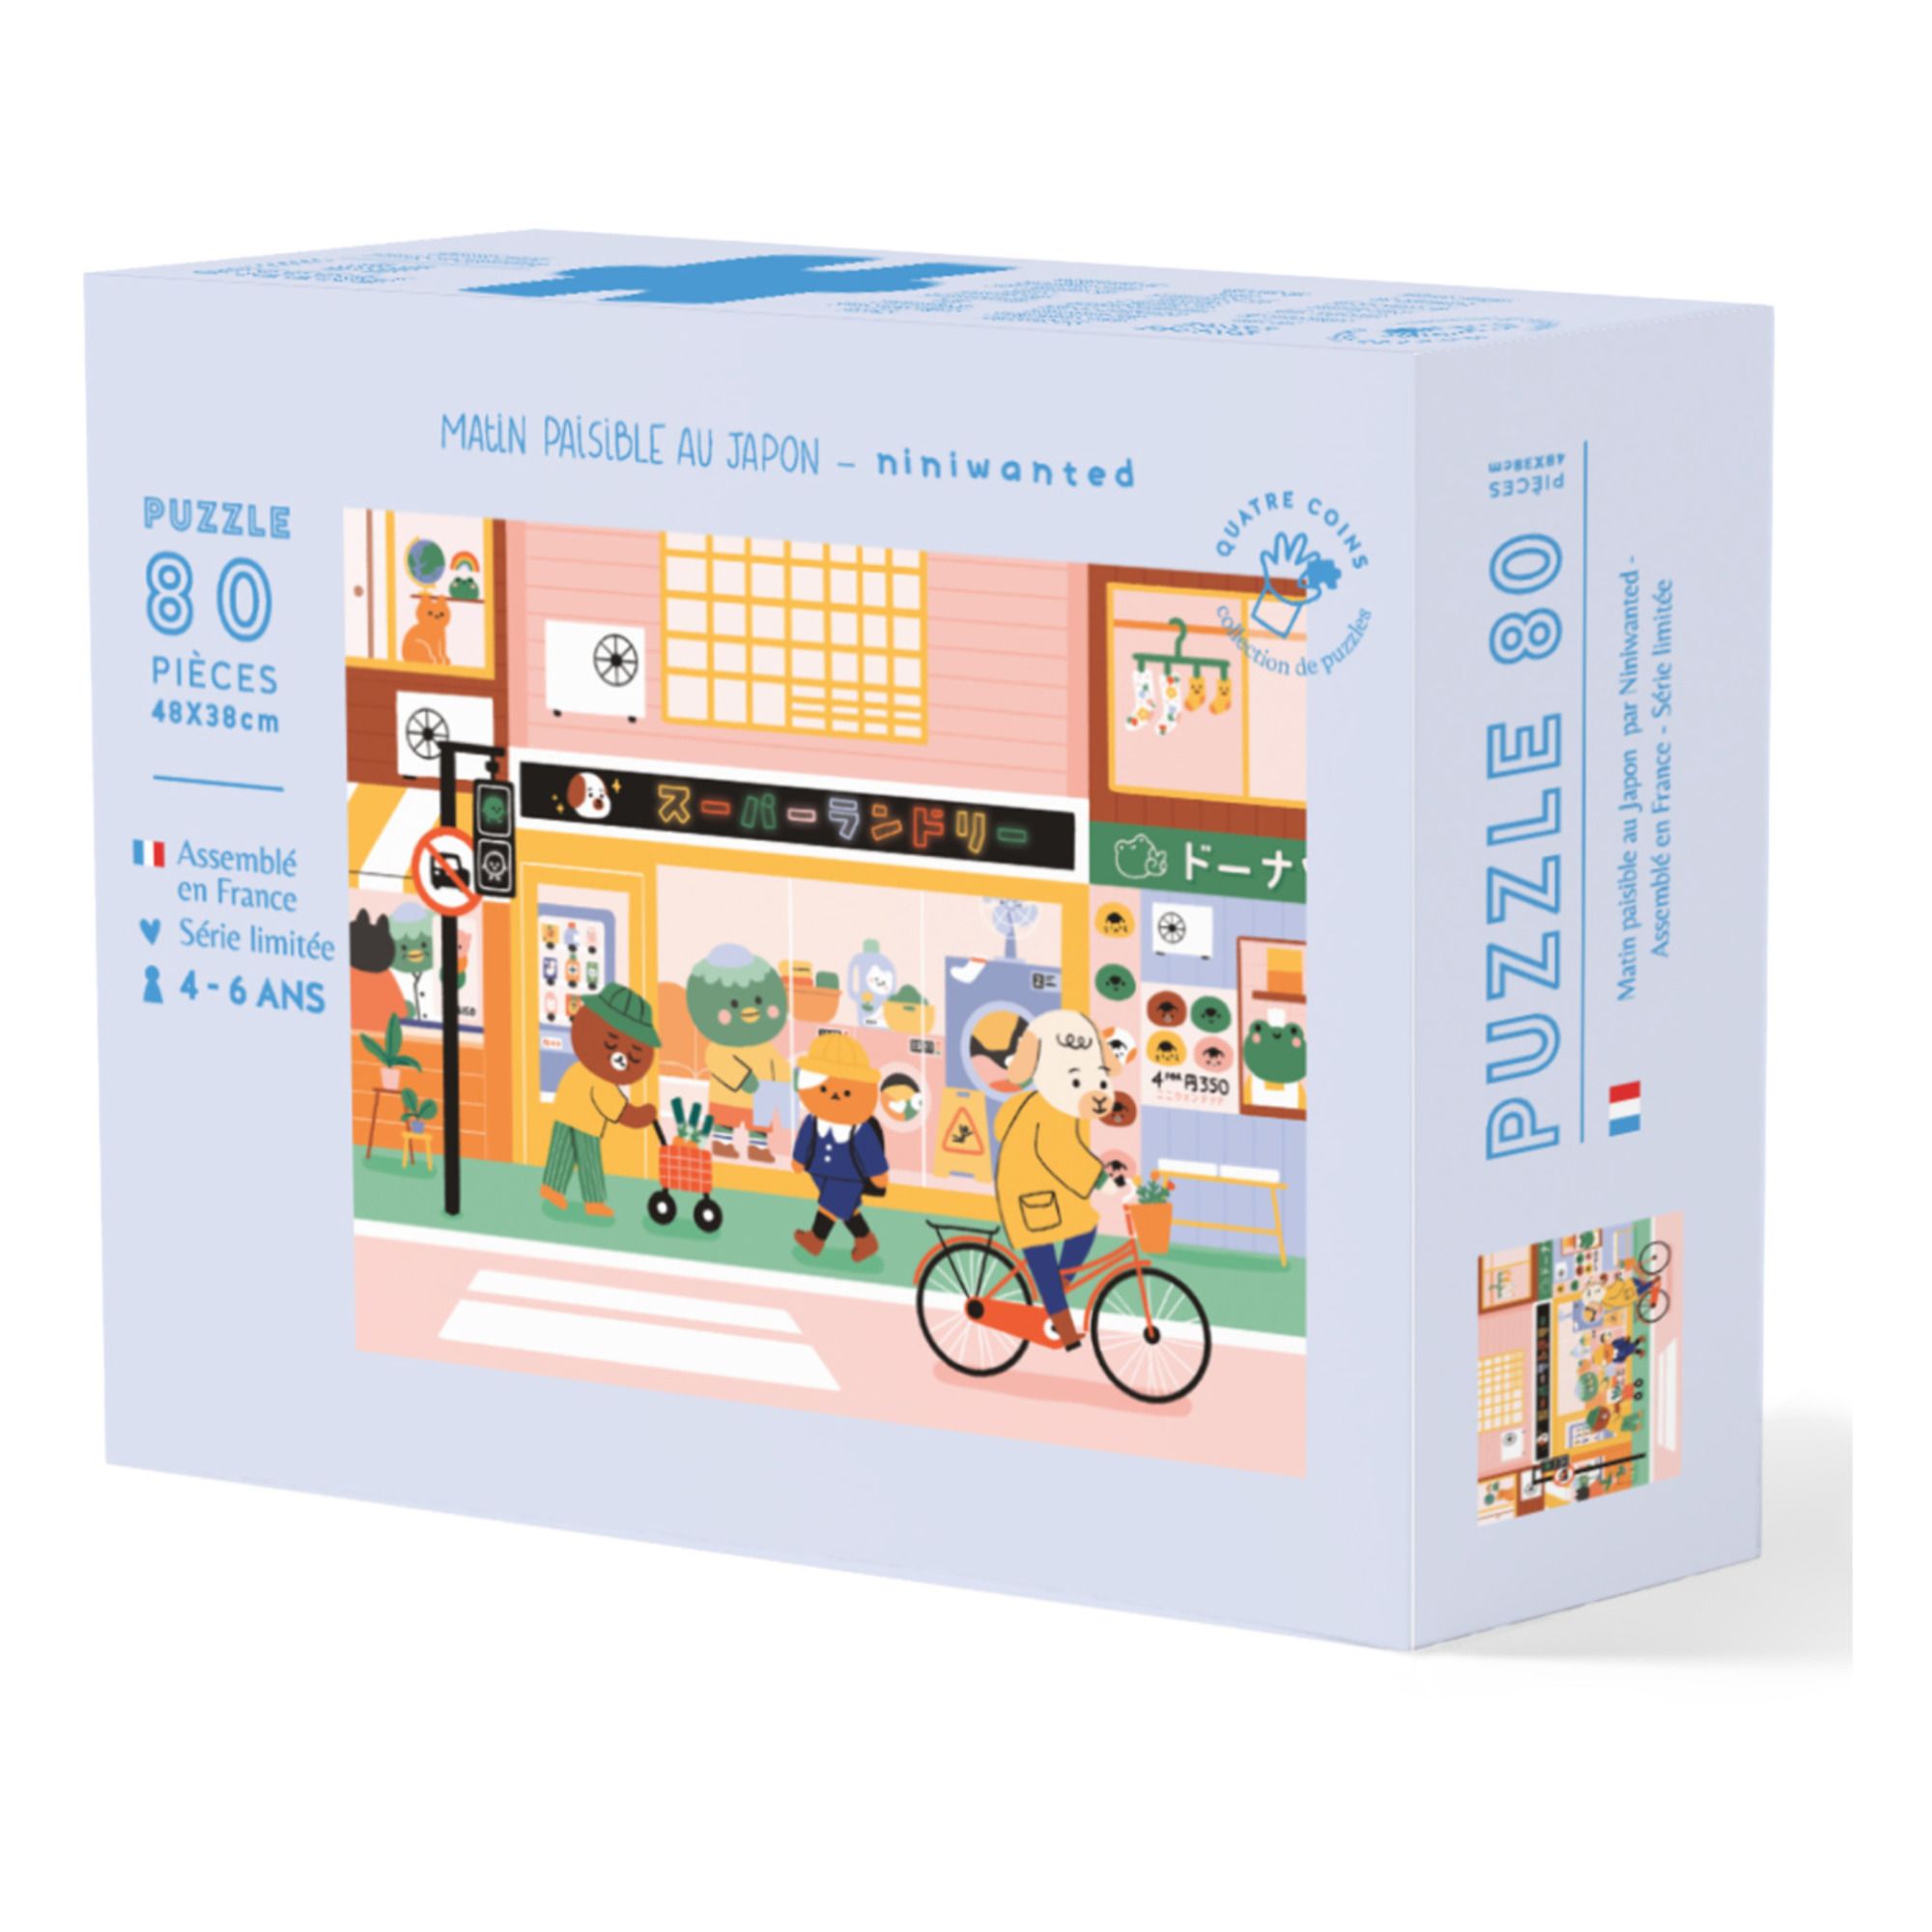 La Petite Epicerie - Puzzle Matin Paisible au Japon par Nini Wanted - 80 pièces - Multicolore